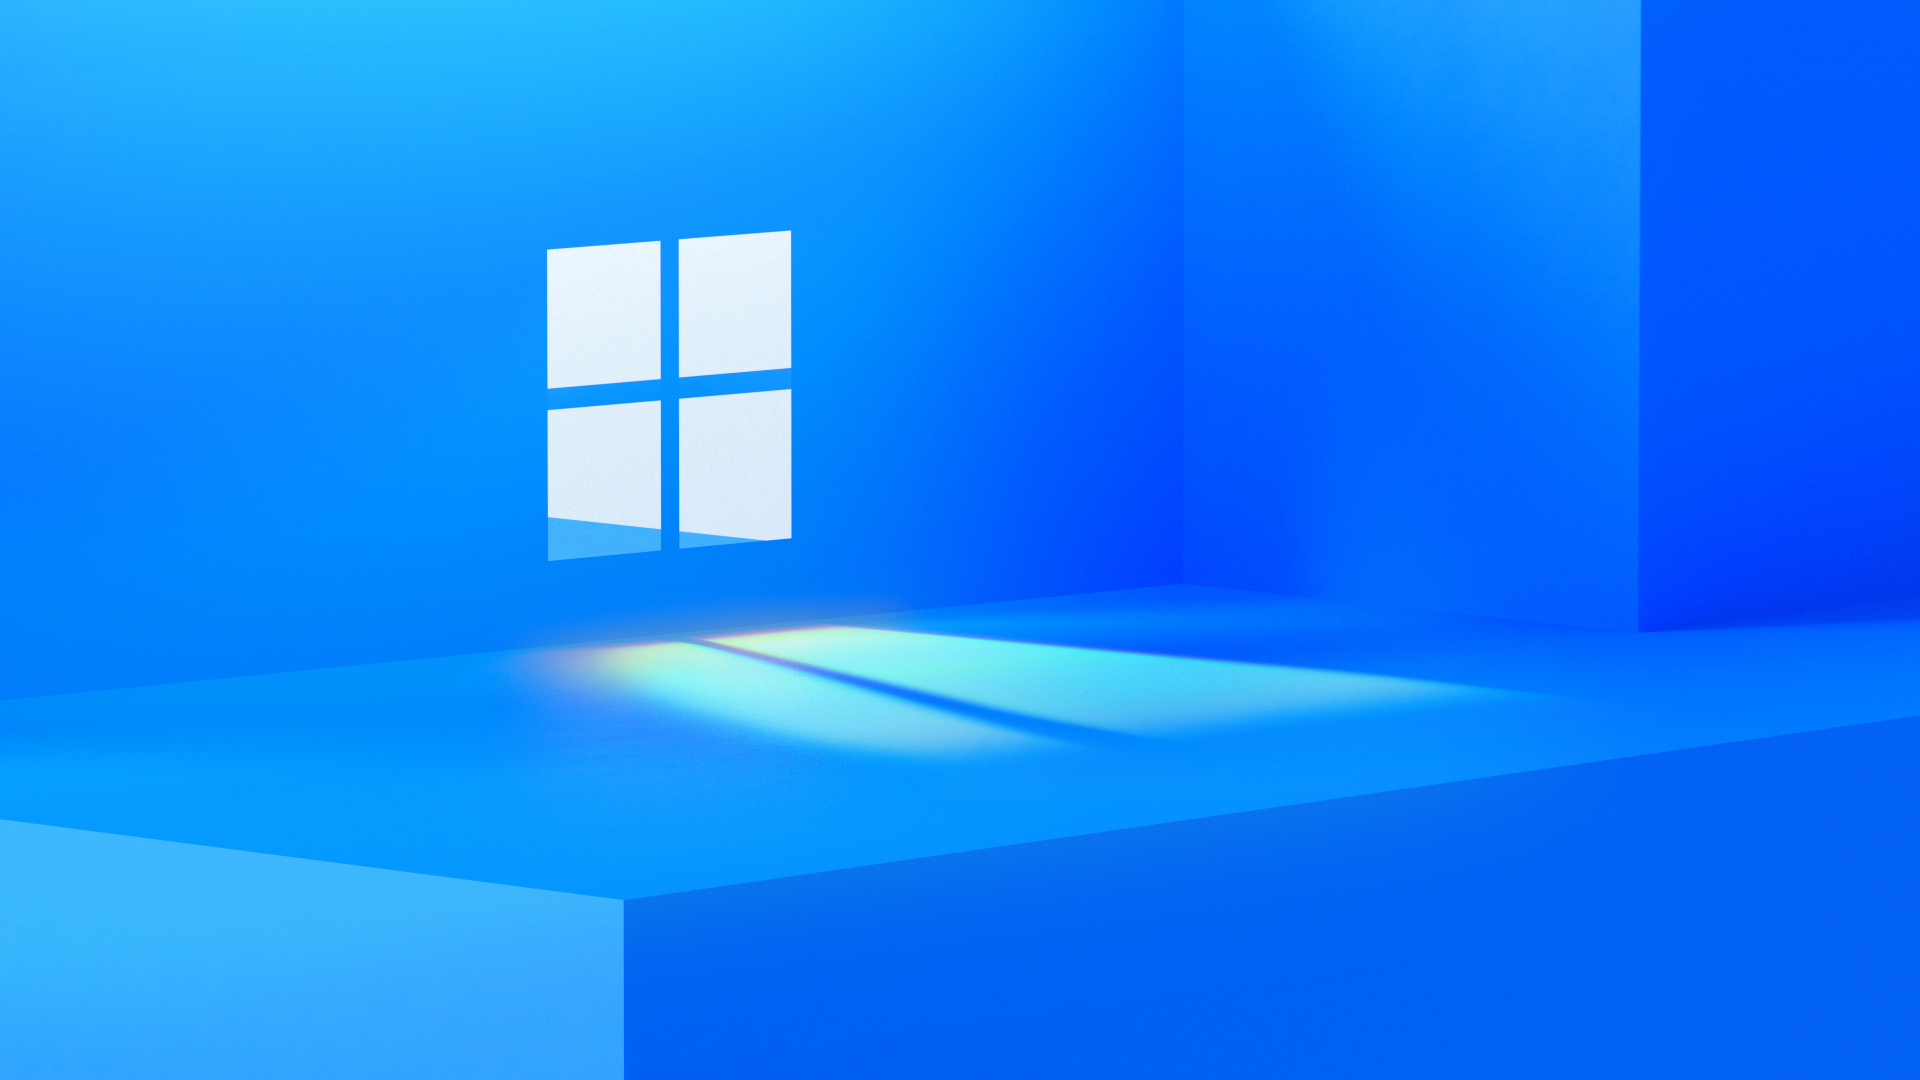 ยังไงกัน!?! Cortana ของ Microsoft เองยังบอกว่าจะไม่มี Windows 11 จริง ๆ นะ